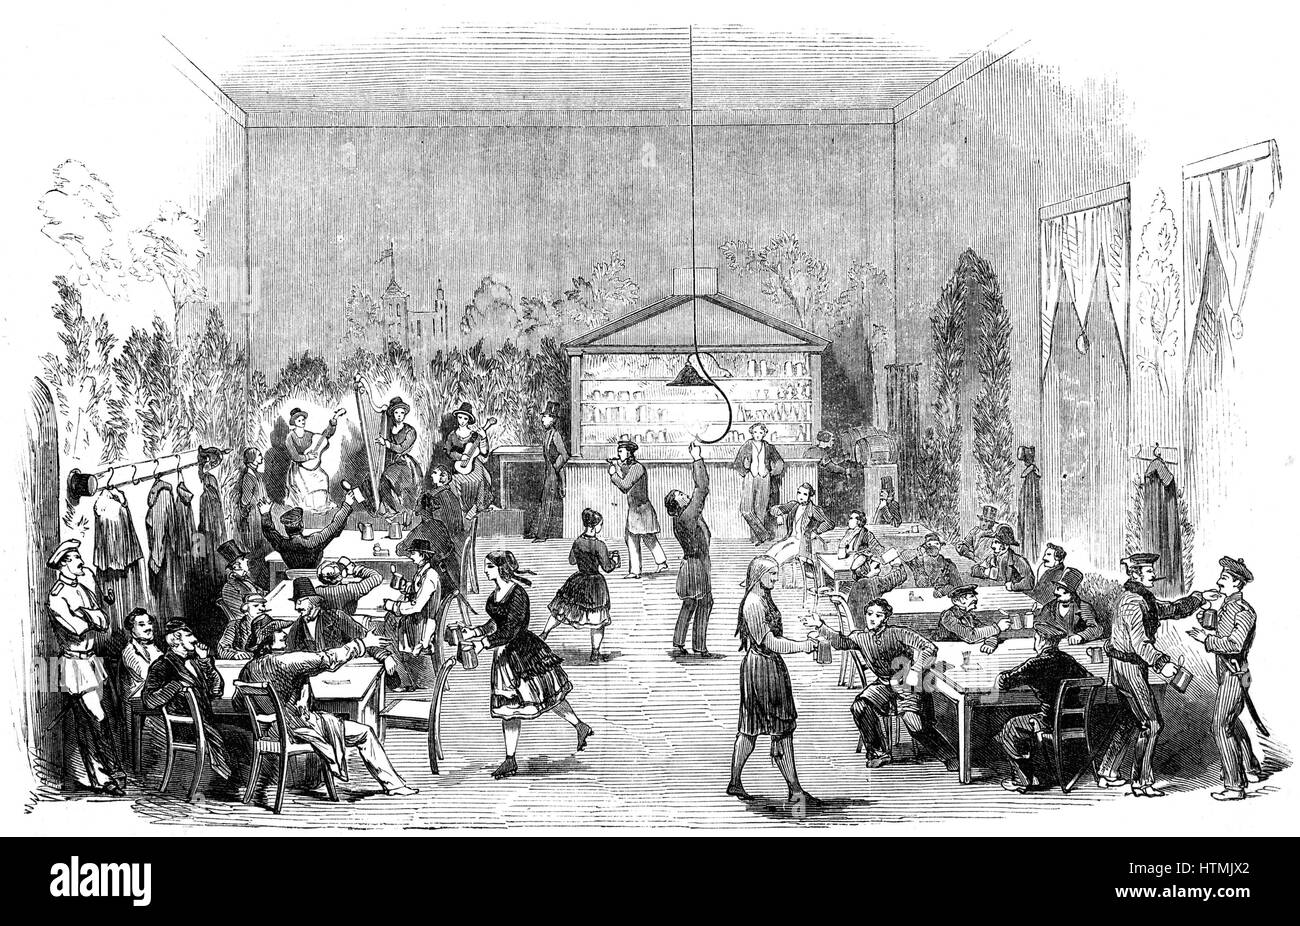 Uno de los primeros buzones erigido en Londres en la esquina de la calle Fleet y Farringdon Street. Grabado en madera de 'The Illustrated London News", 24 de marzo de 1855. Foto de stock